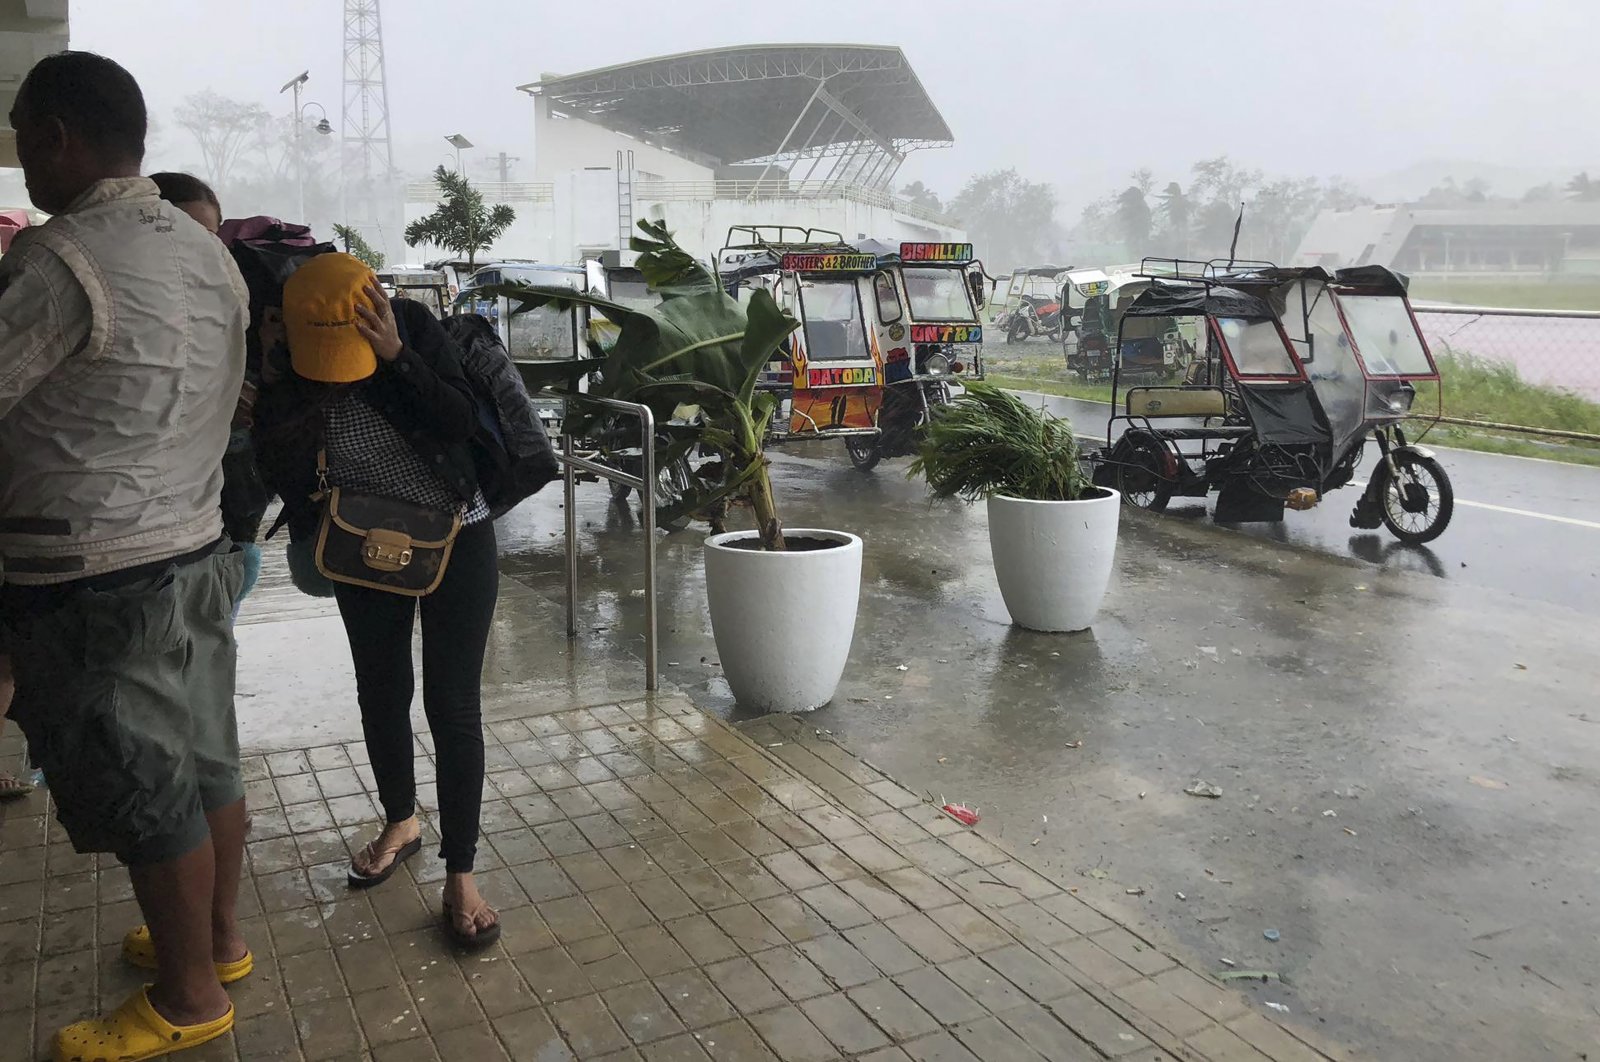 Ribuan dievakuasi saat topan kuat mengancam Filipina